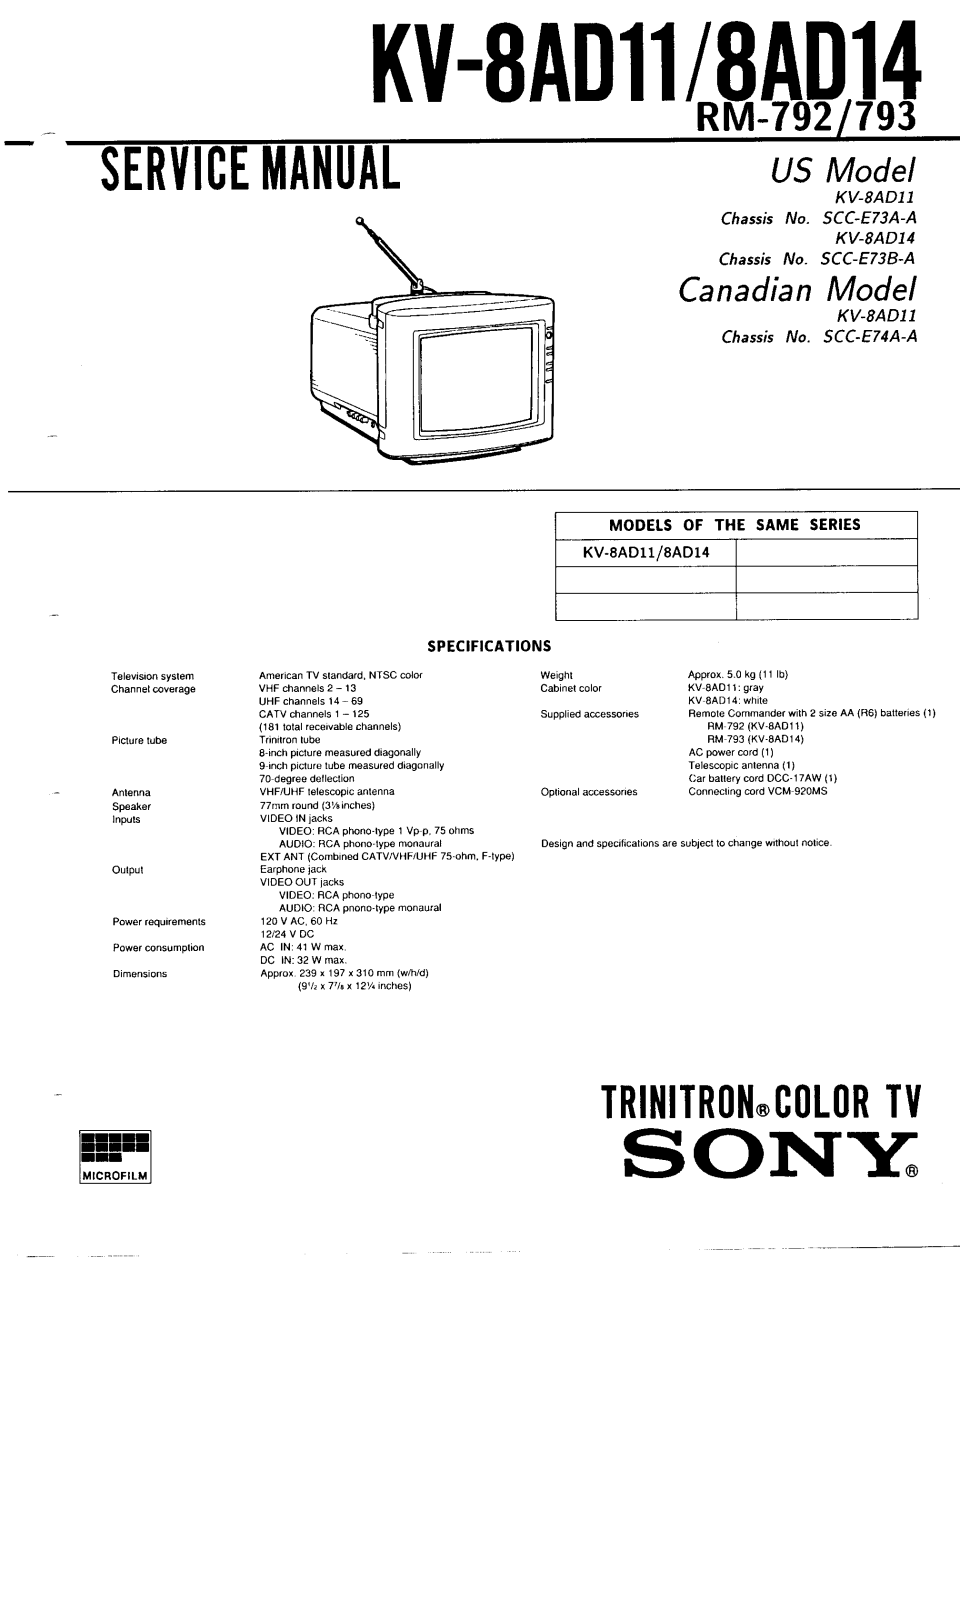 SONY kv-8ad11, kv-8ad14 Service Manual